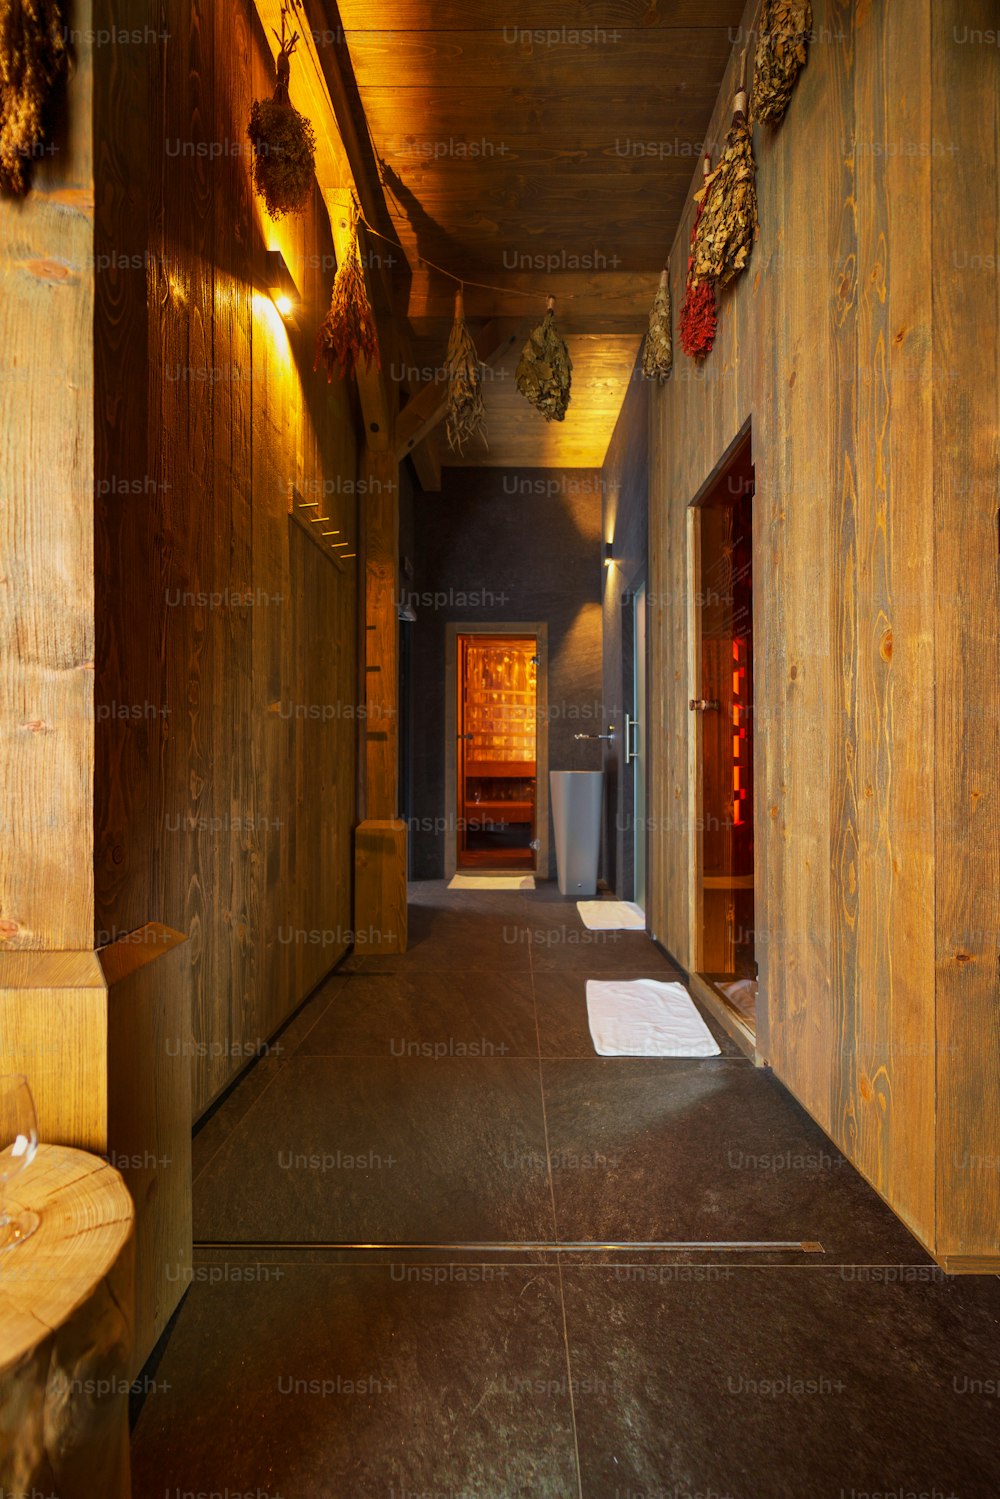 Um interior de um luxuoso centro de bem-estar de spa com sauna.